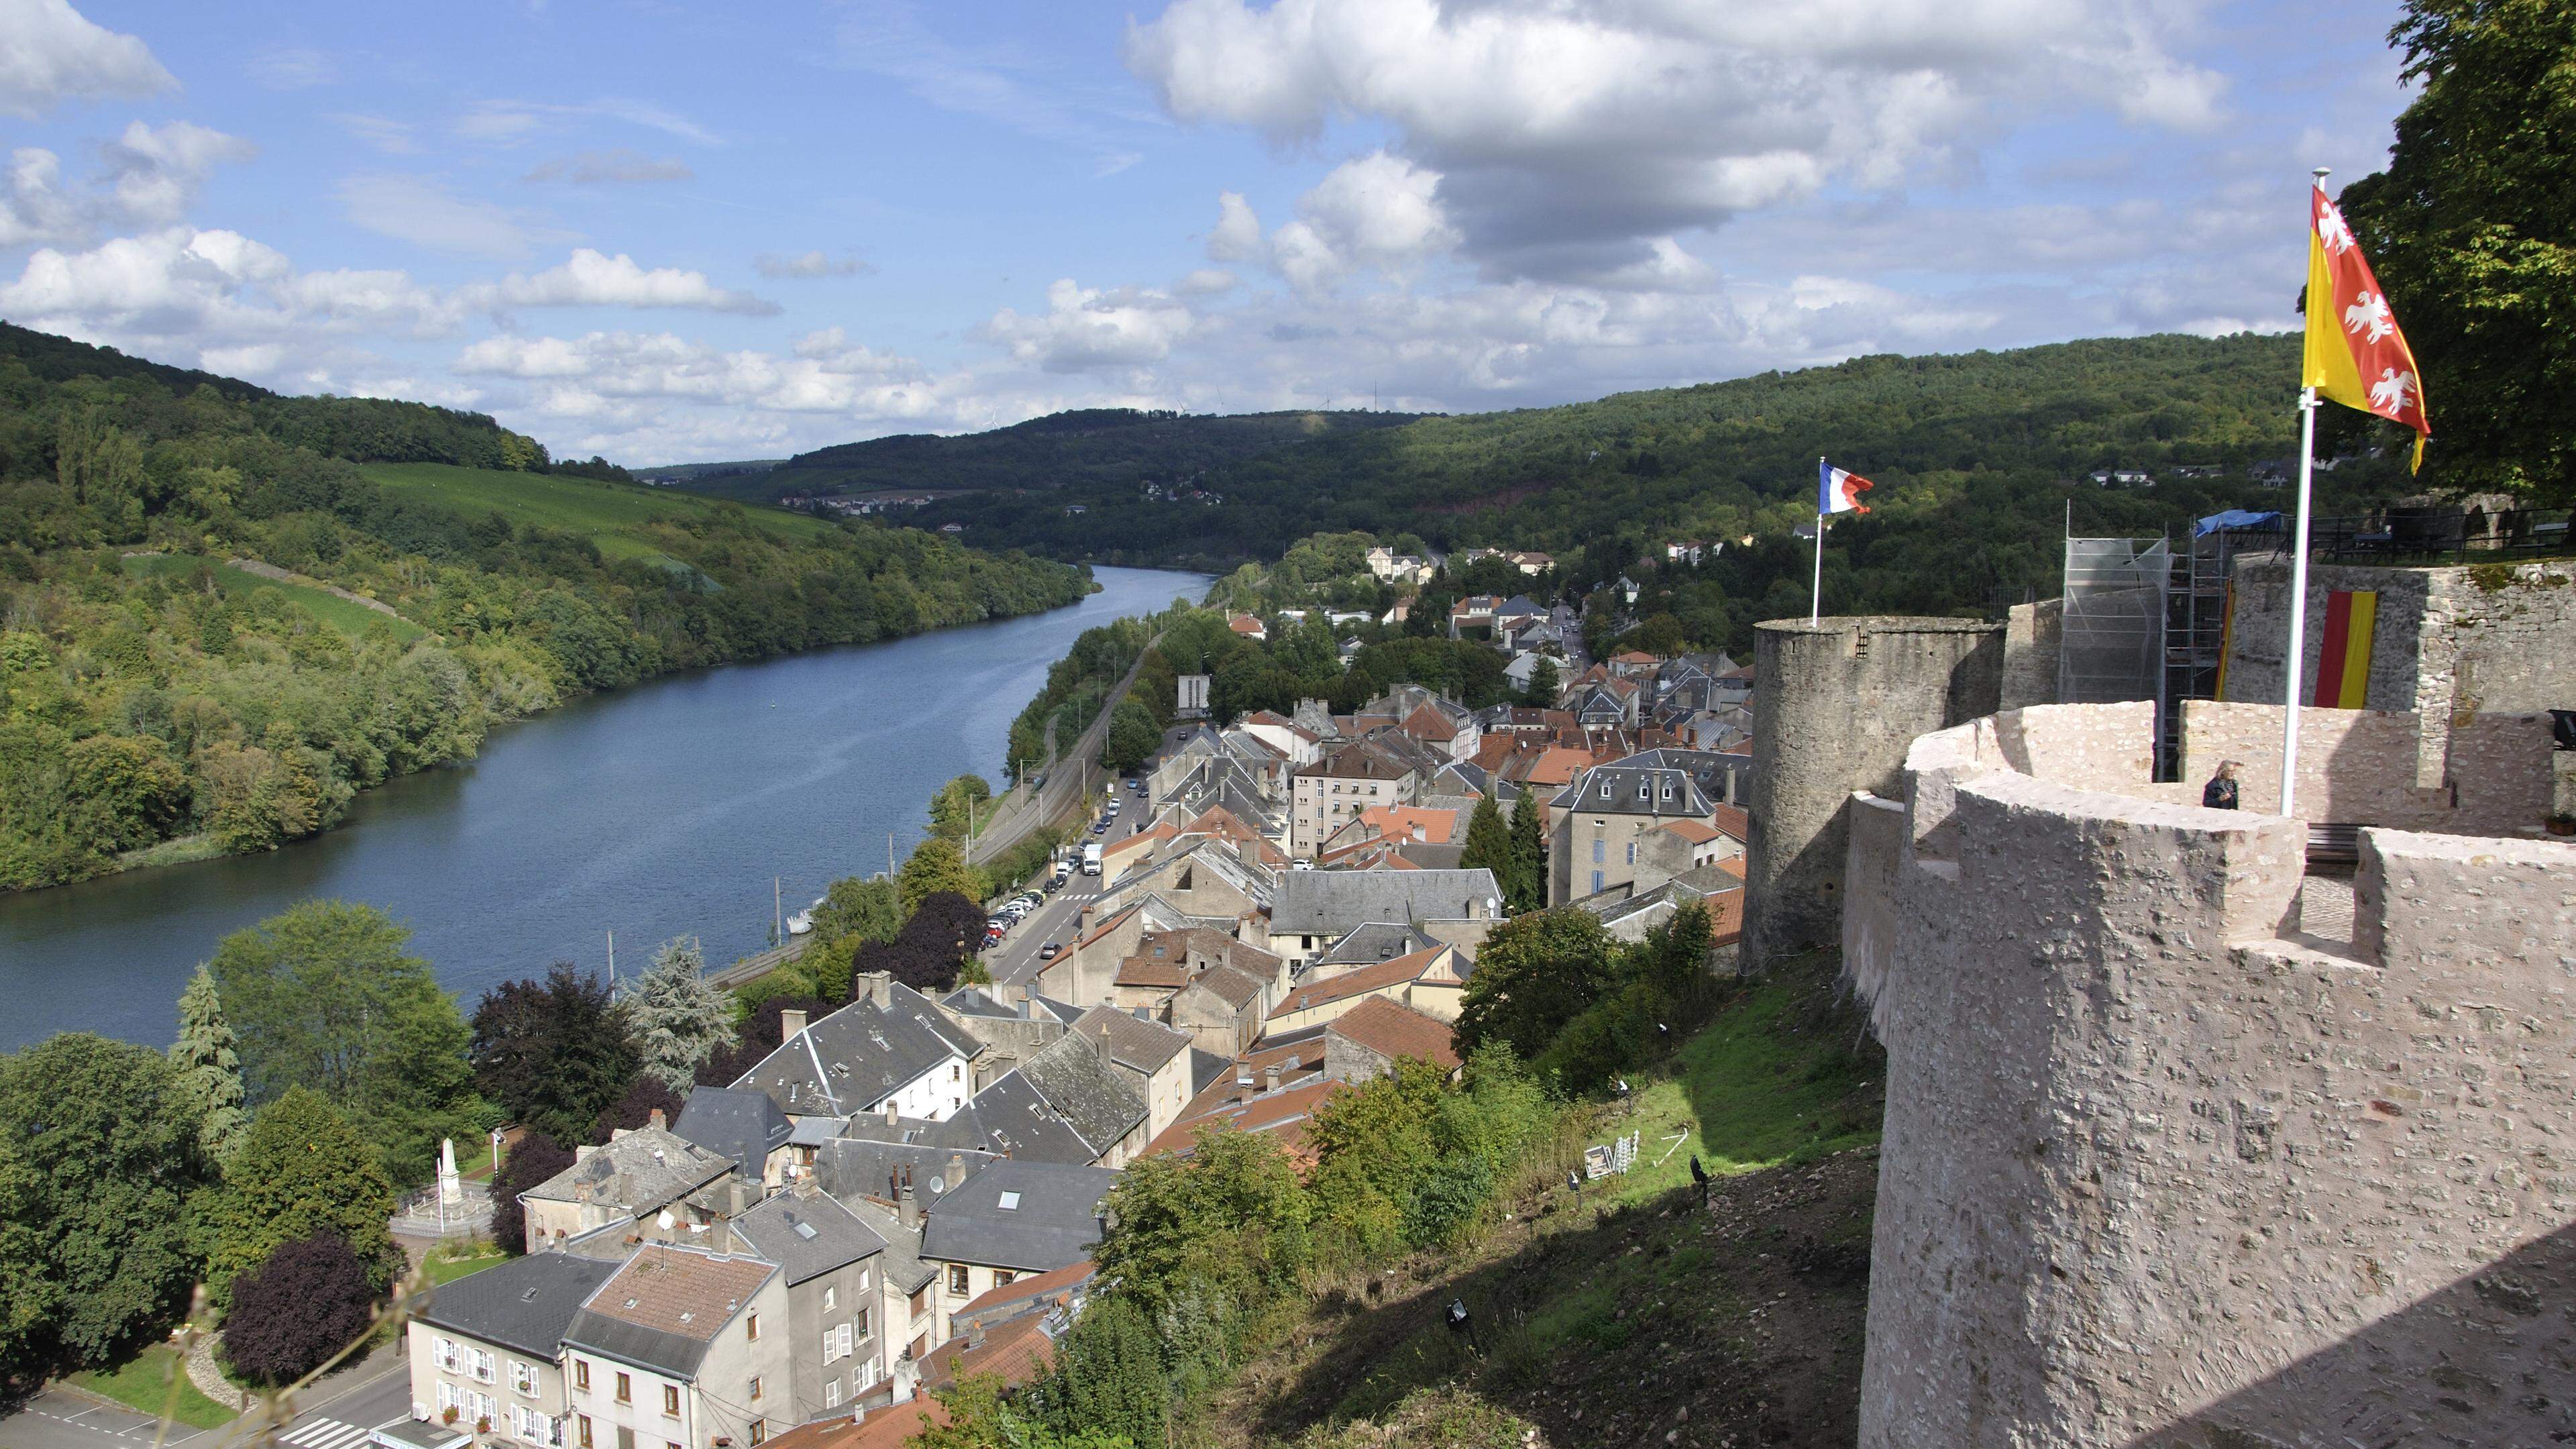 La cité médiévale de Sierck servira de cadre à la 10e édition de la Fête des vins de Moselle, de dimanche 5 mai.